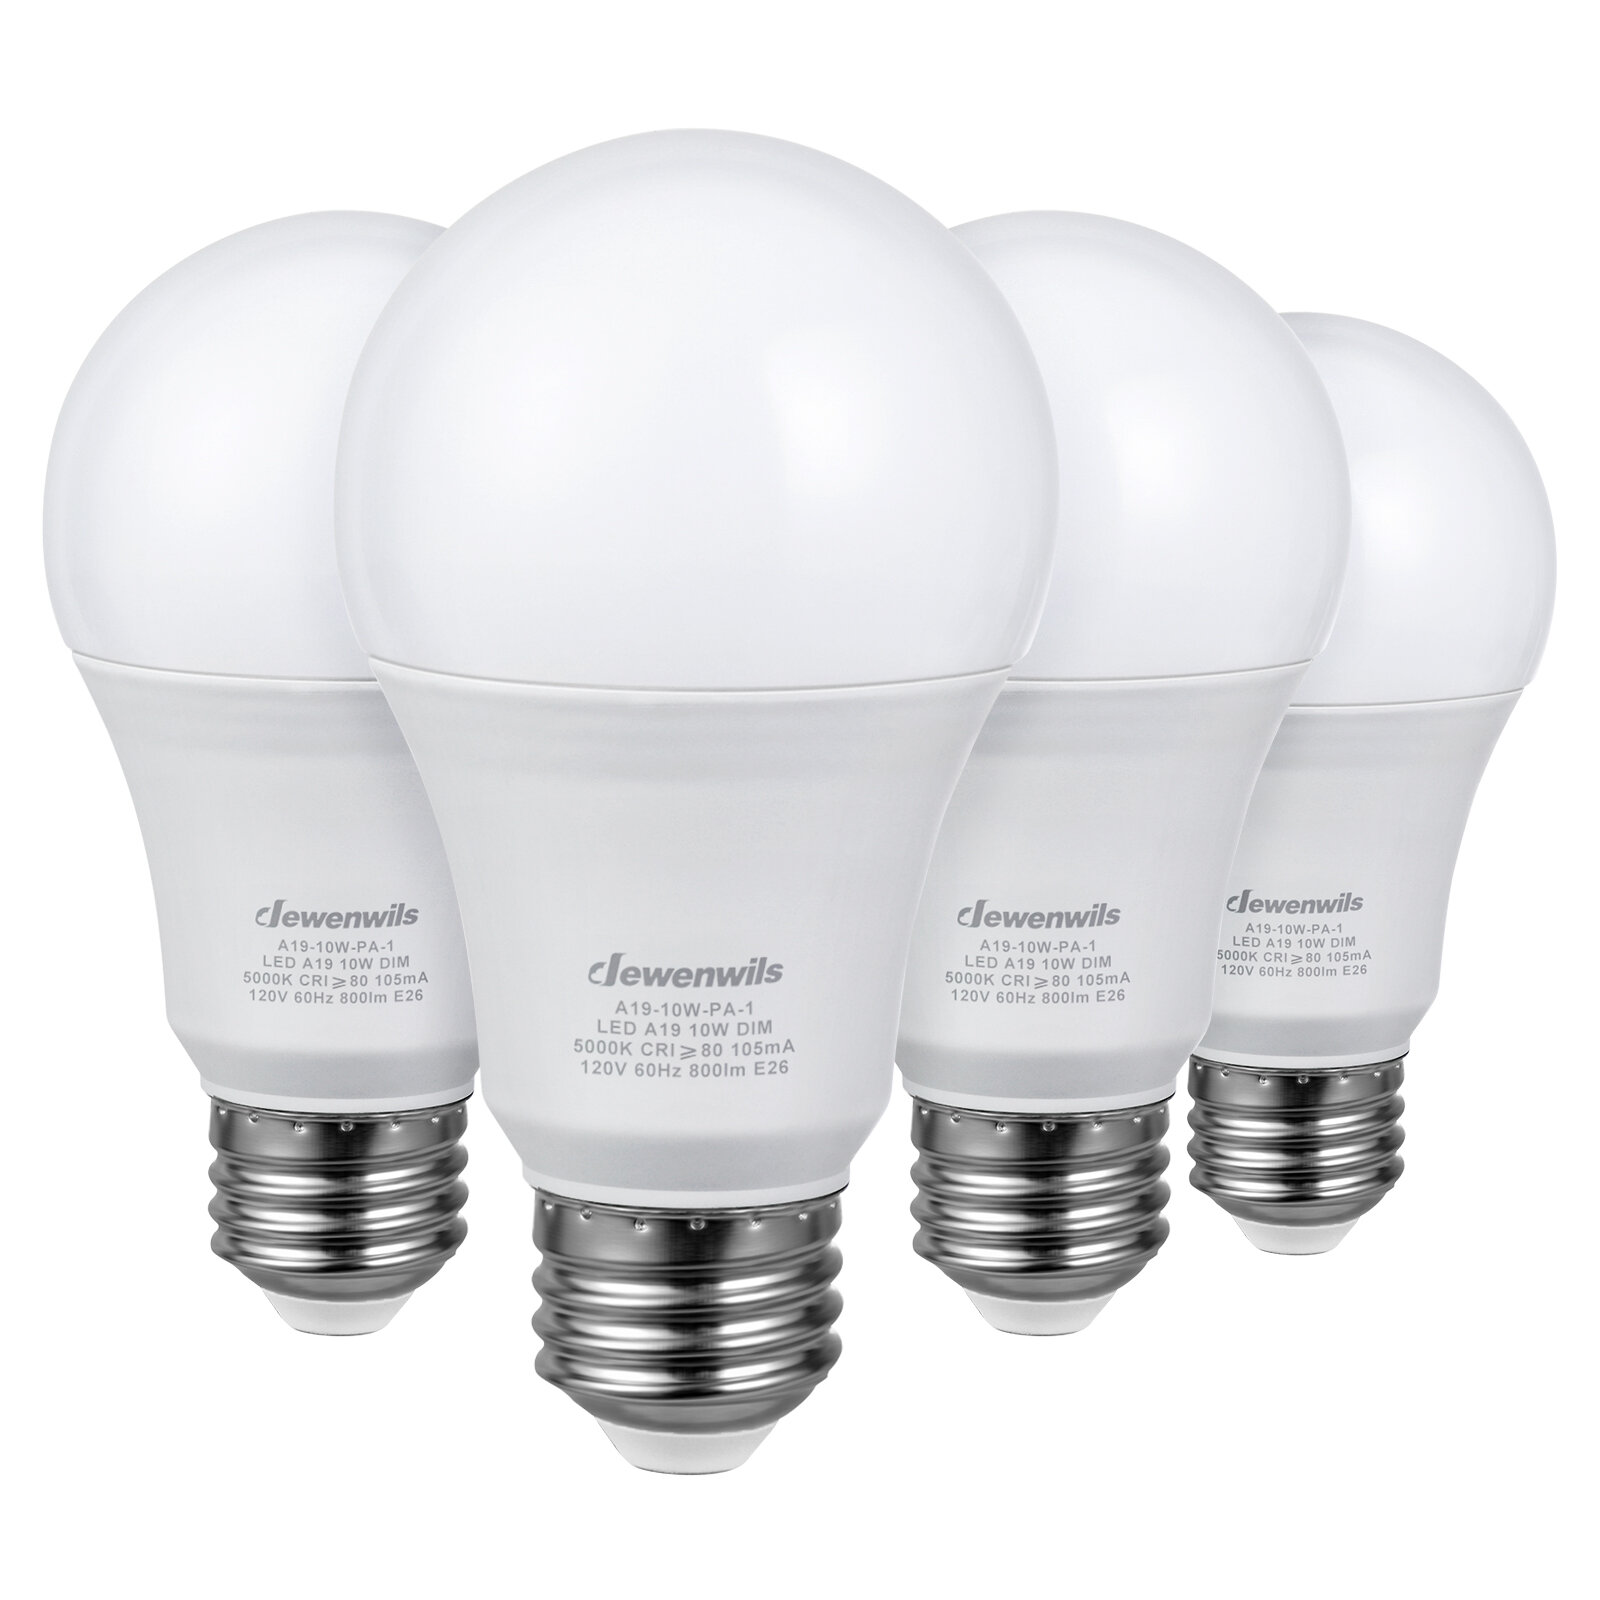 -1 Directional LED Light Bulb 10 watt LED A19 Style Replacement for Standard E26 Light Bulb Socket 